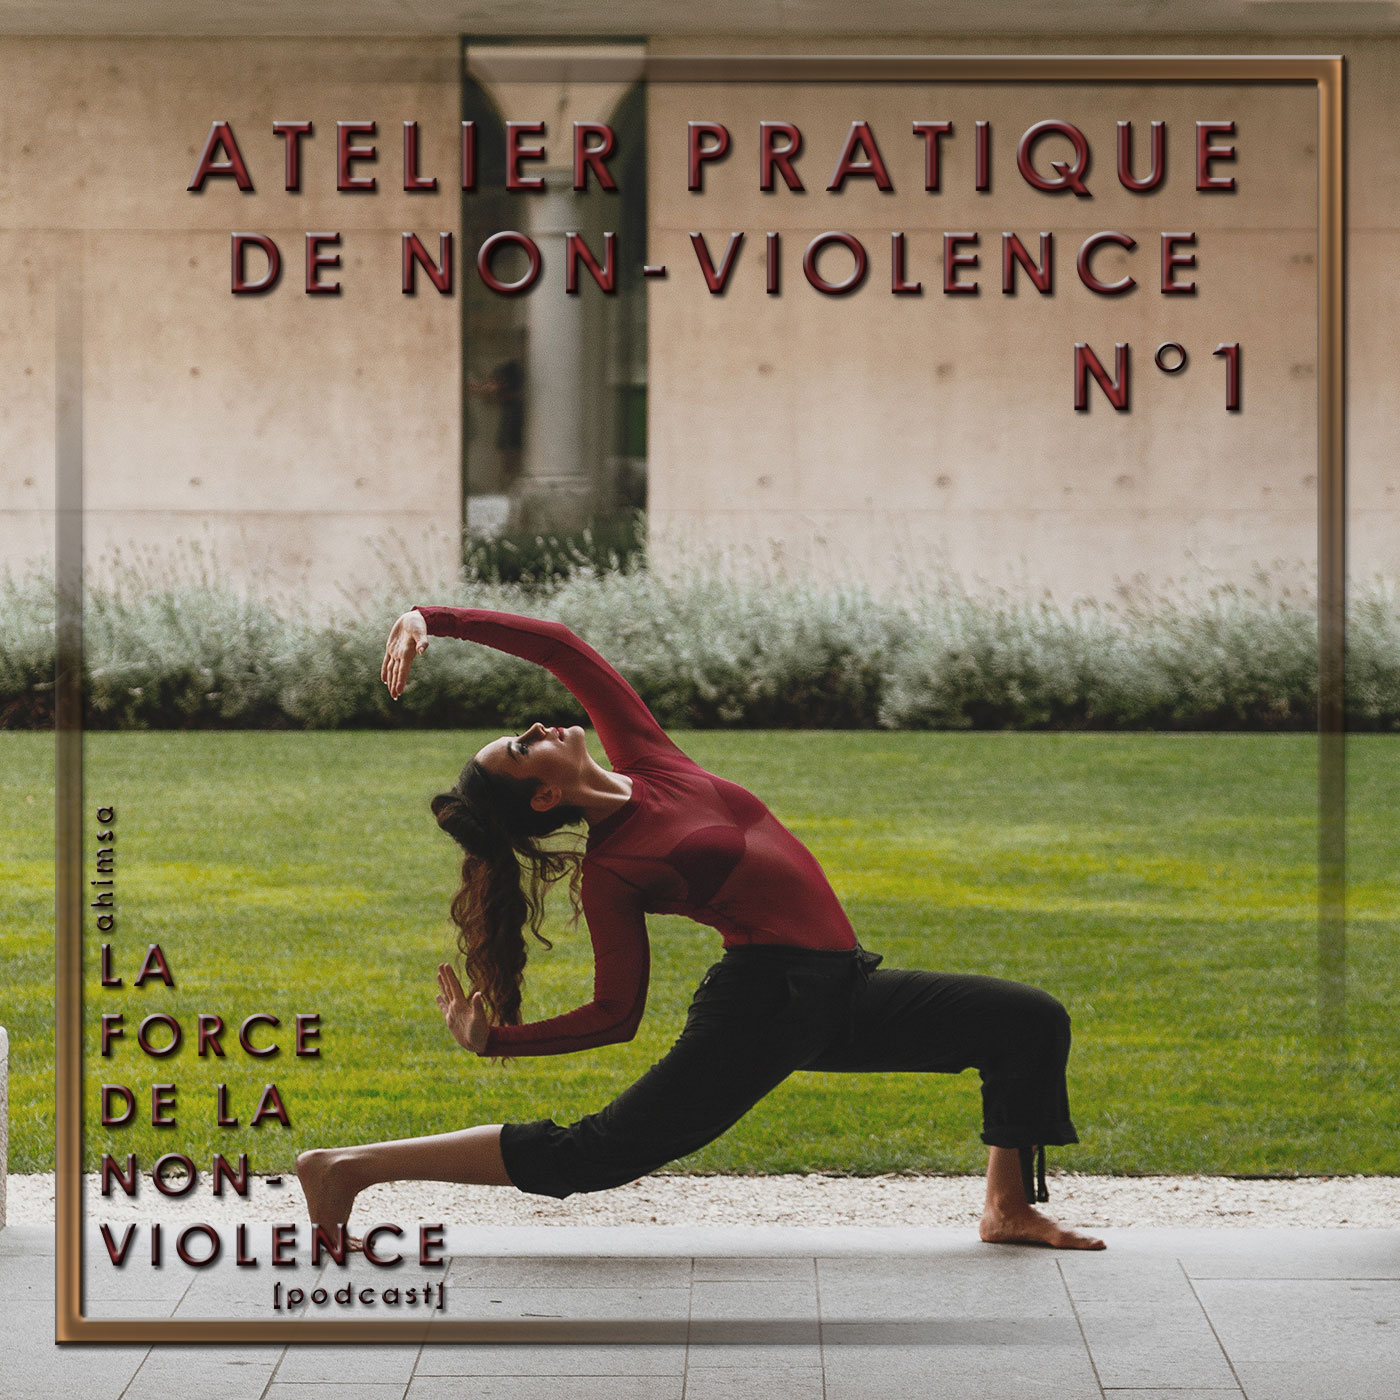 Atelier pratique n°1 de non-violence - respirer la joie - podcast La Force de la Non-violence